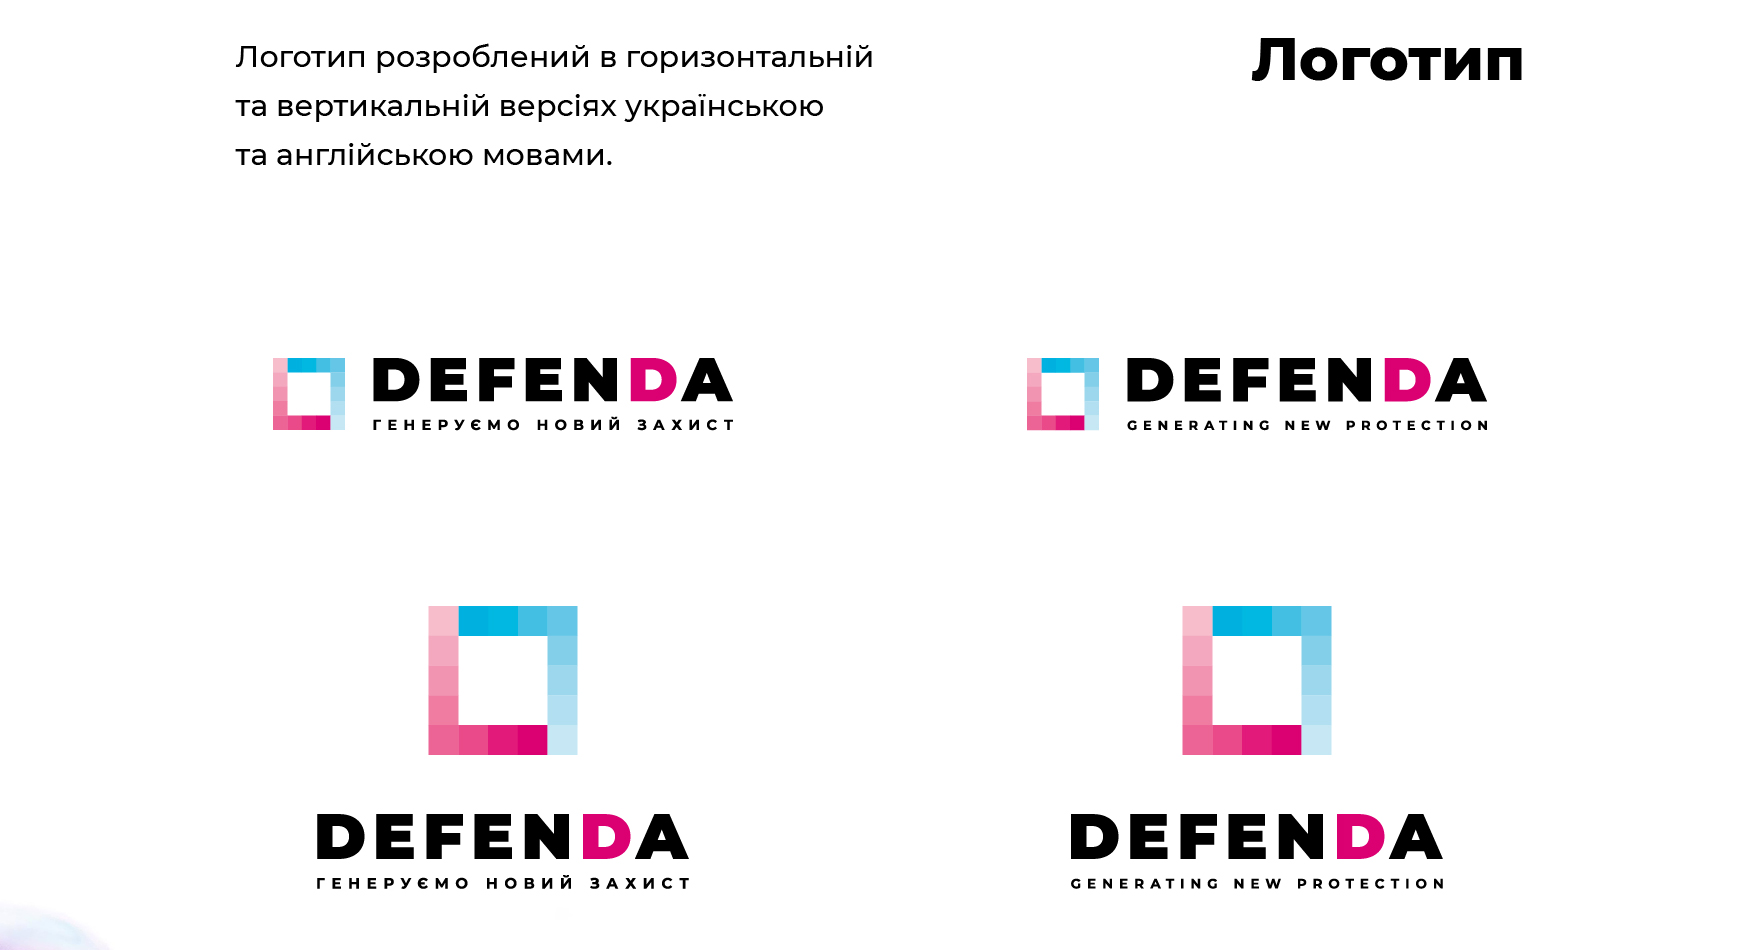 Логотип розроблений в горизонтальній та вертикальній версіях українською та англійською мовами.